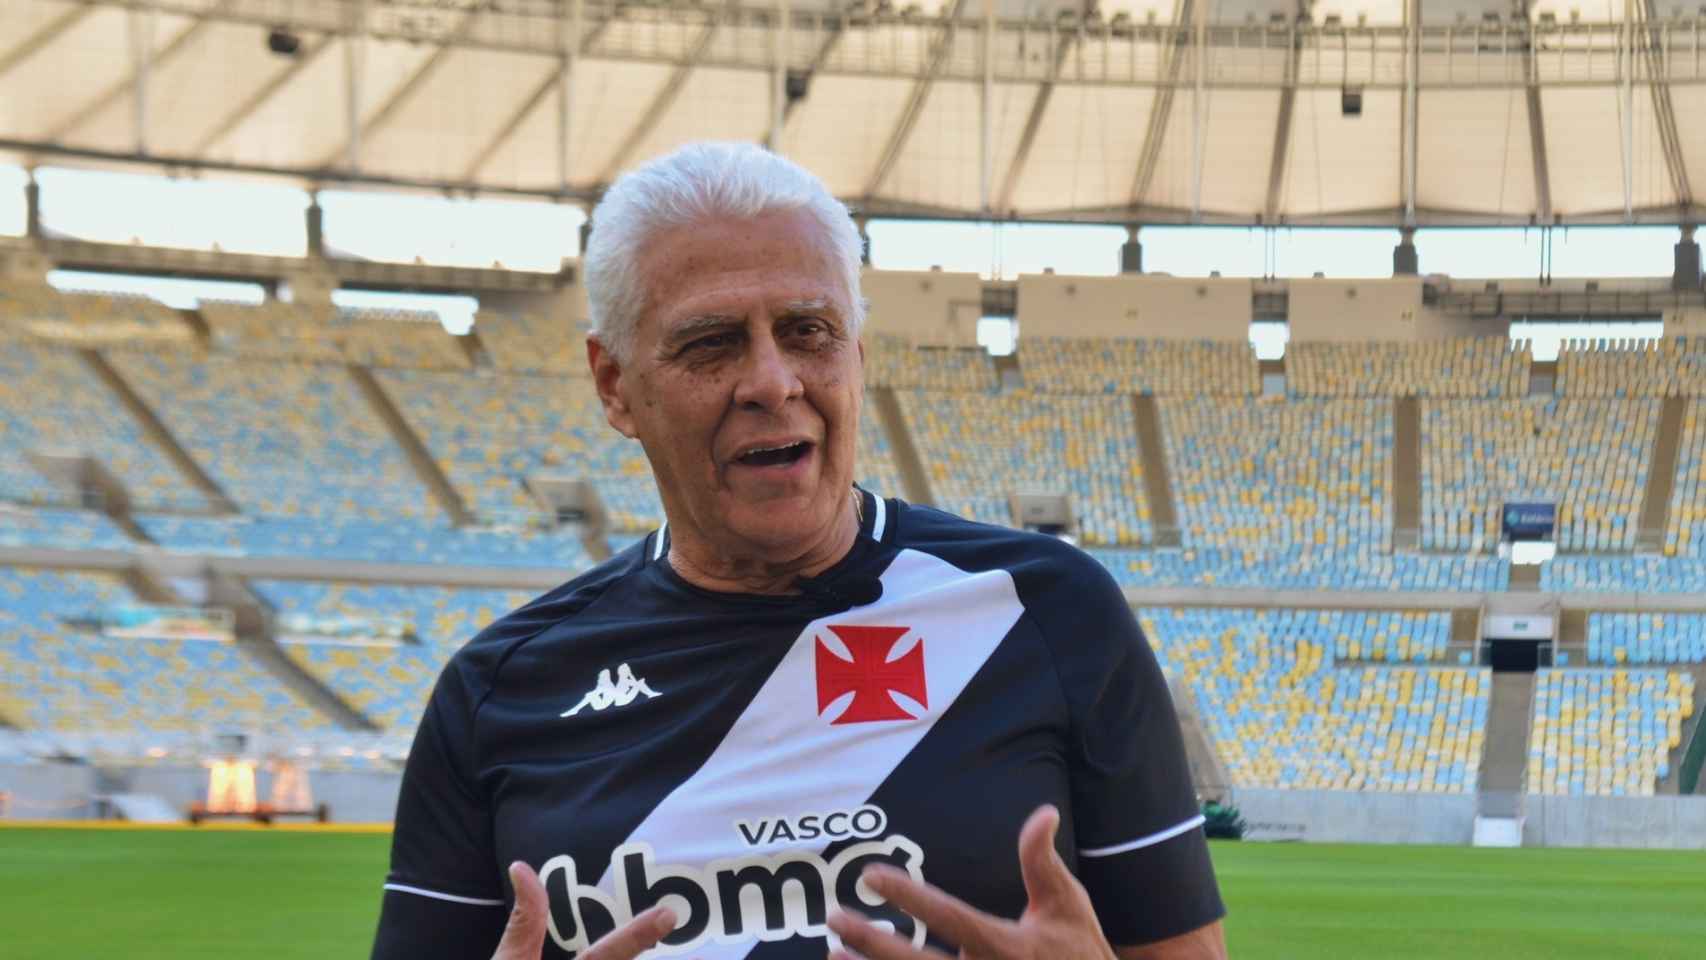 Roberto Dinamita, en una imagen con la camiseta del Vasco da Gama.